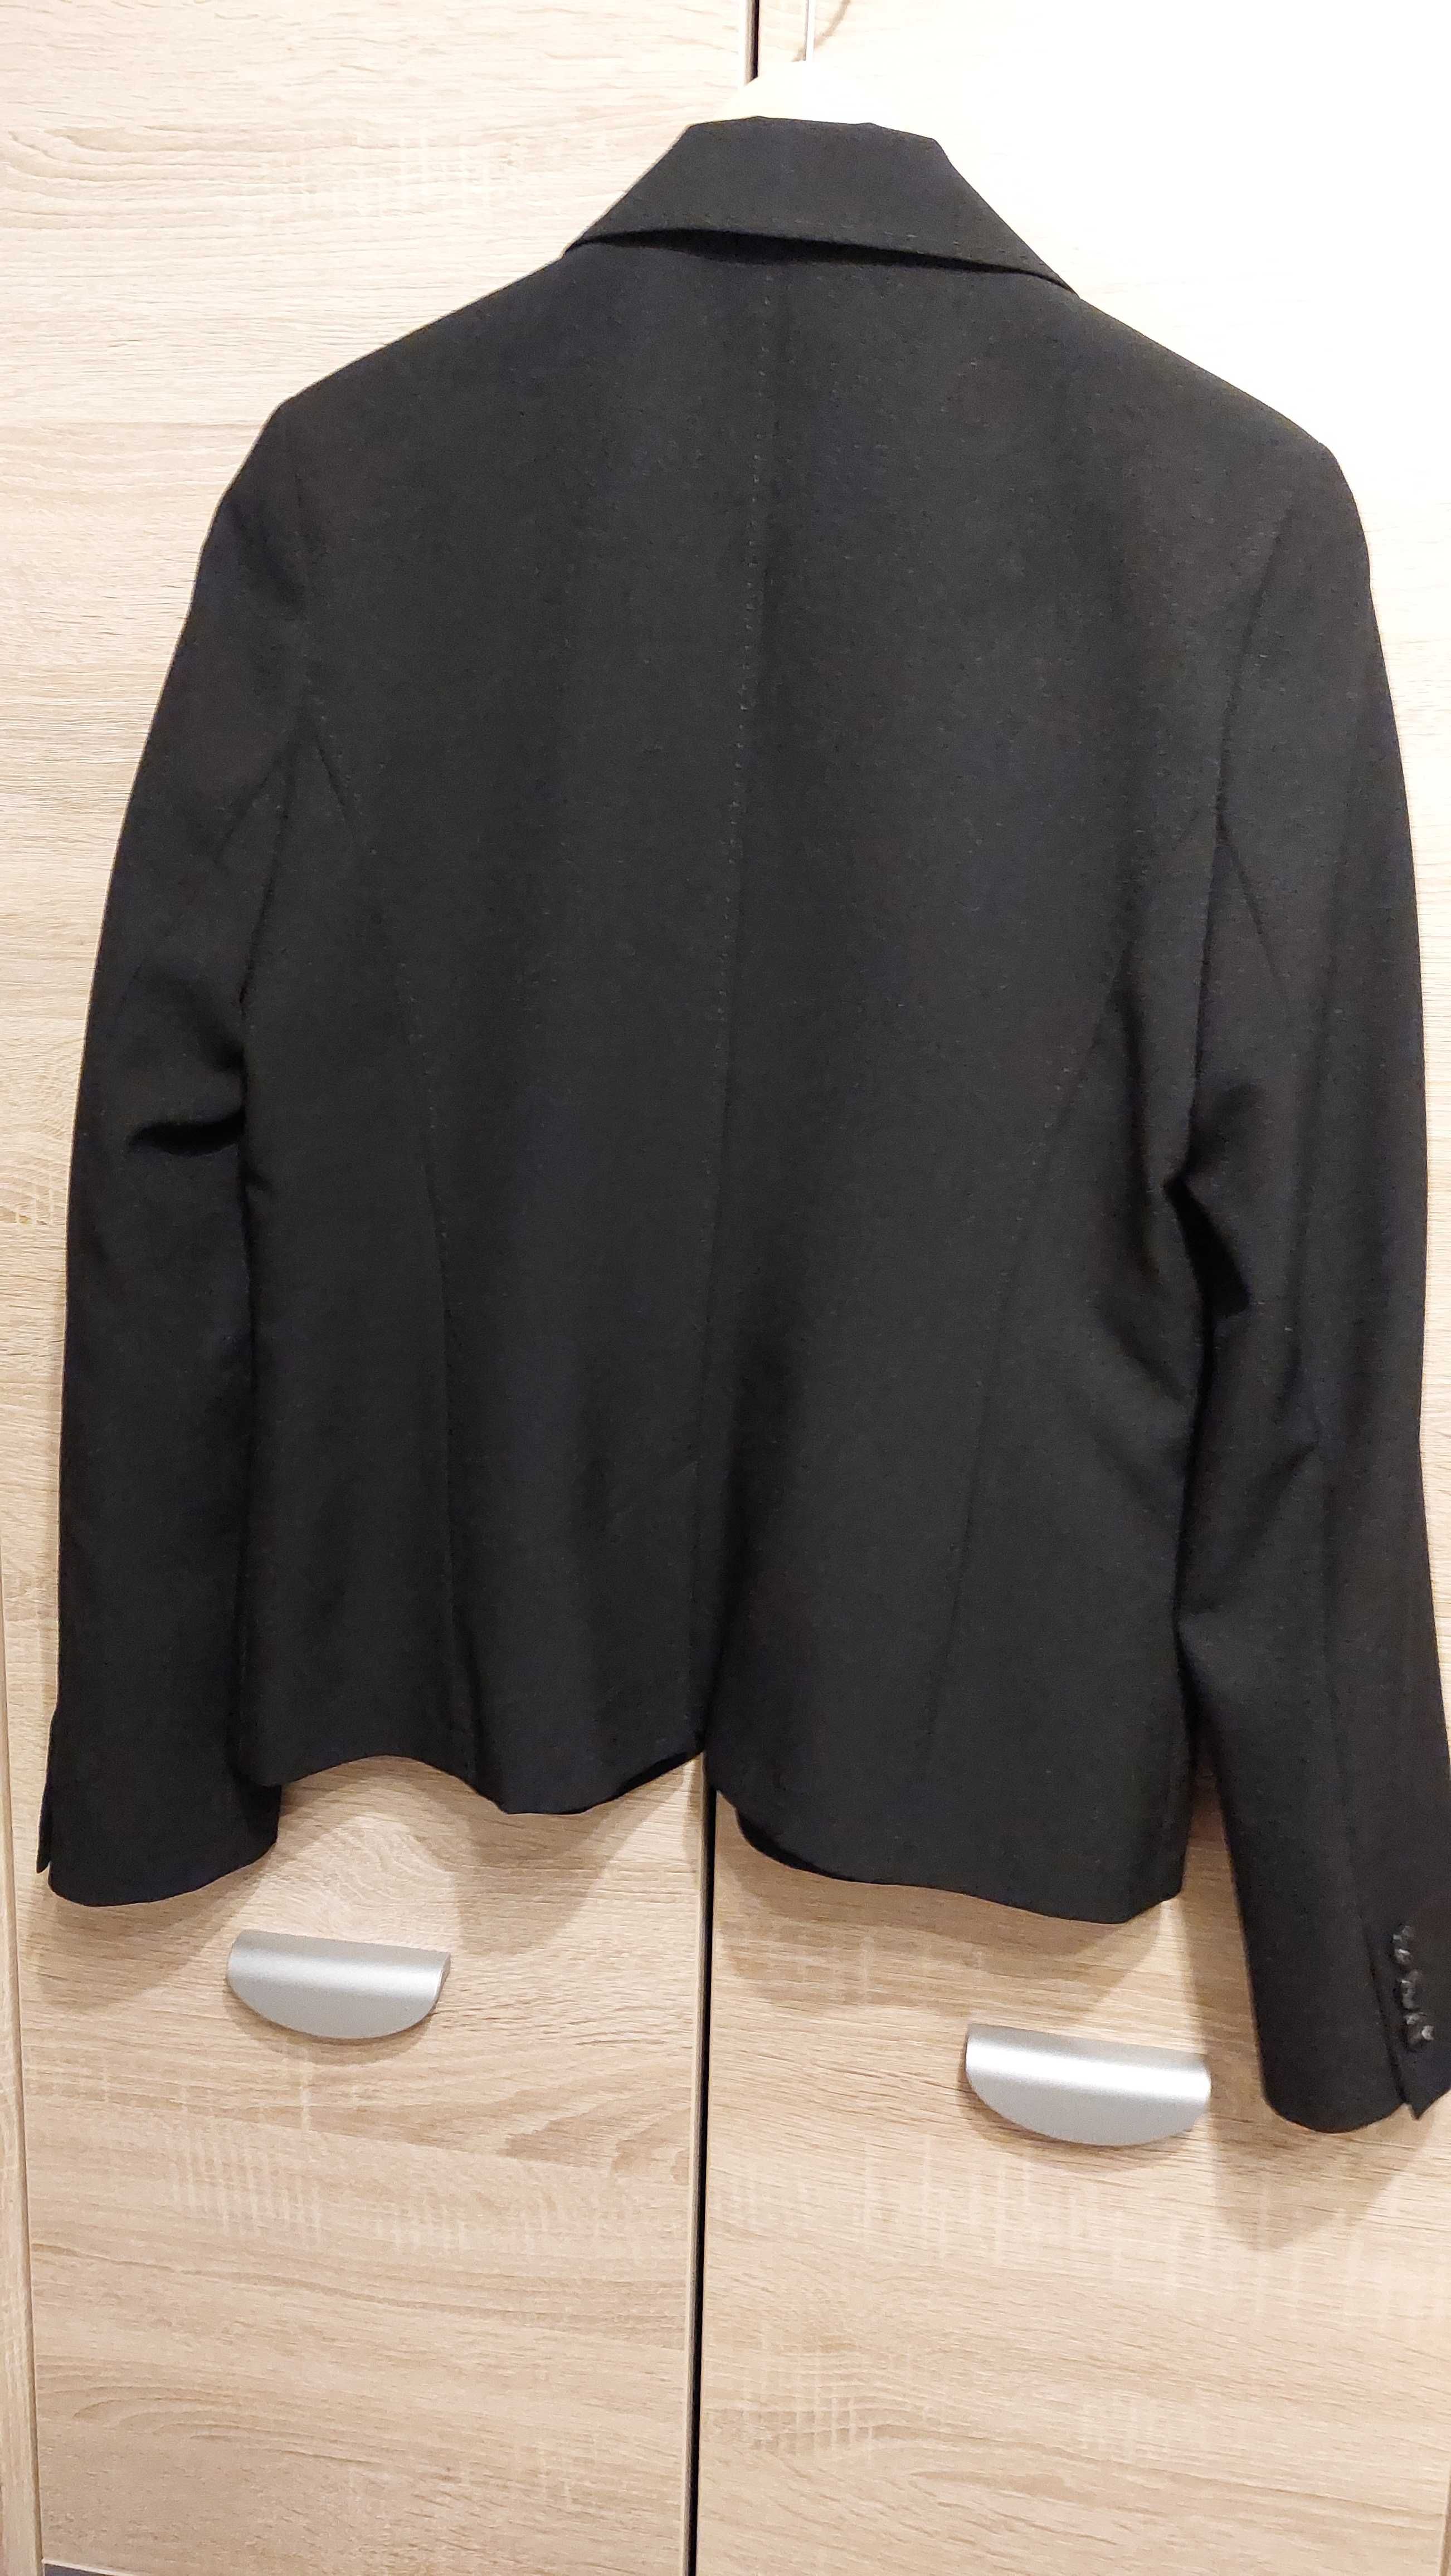 Nowy, czarny żakiet damski w rozmiarze 40 firmy F&F